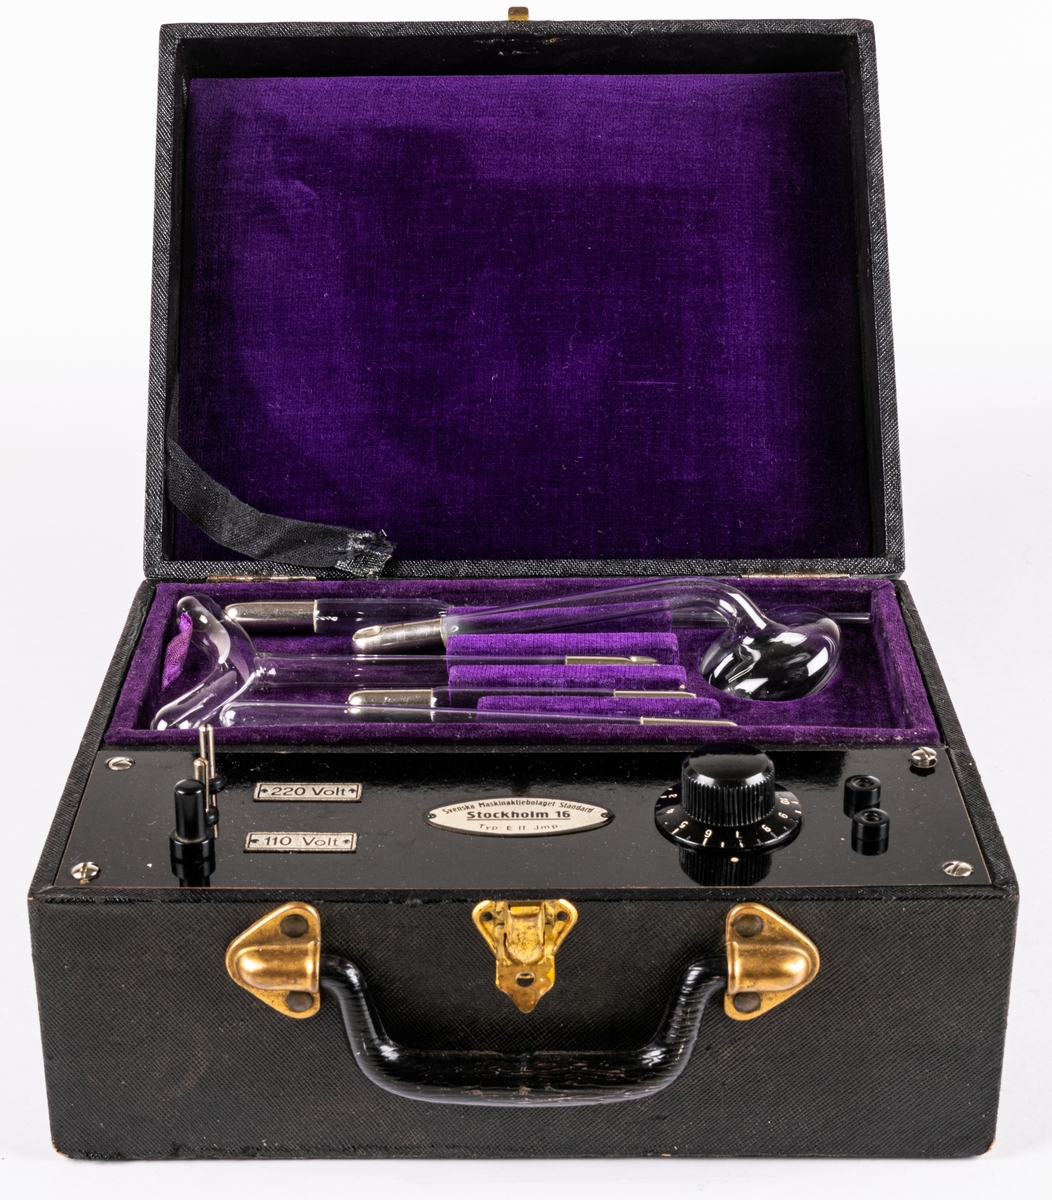 Elbehandlingsapparat i nio delar.
Svart väska med insidan klädd i lila sammet, svart bakelithandtag samt 5 tillbehör i glas o metall.